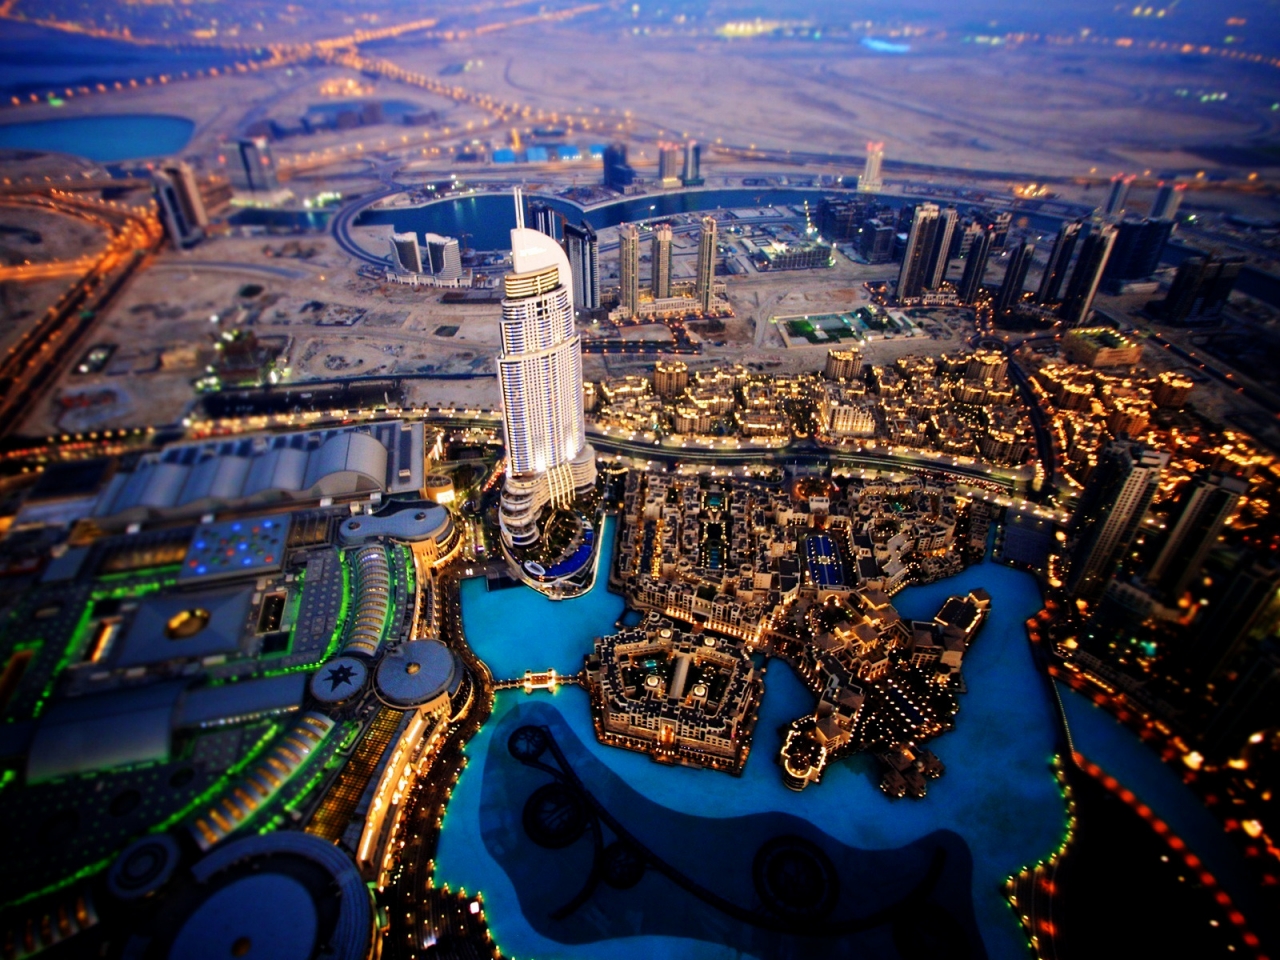 Dubai Sky View for 1280 x 960 resolution